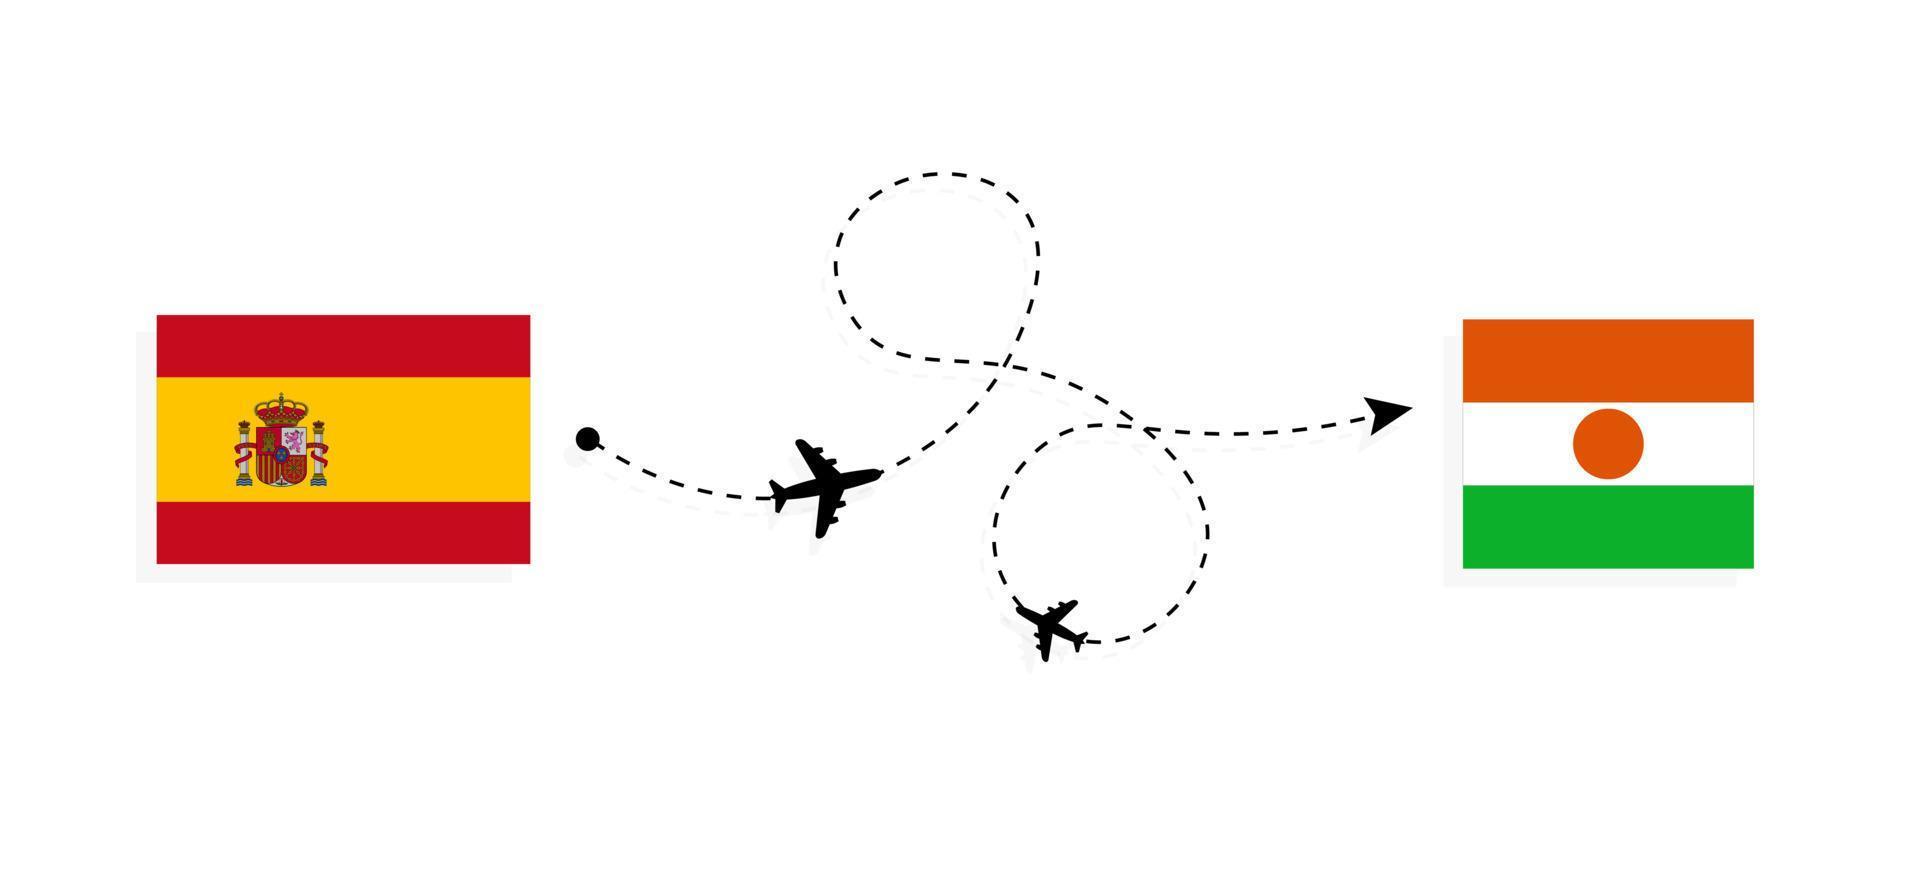 flygning och resor från Spanien till niger med passagerarflygplan vektor